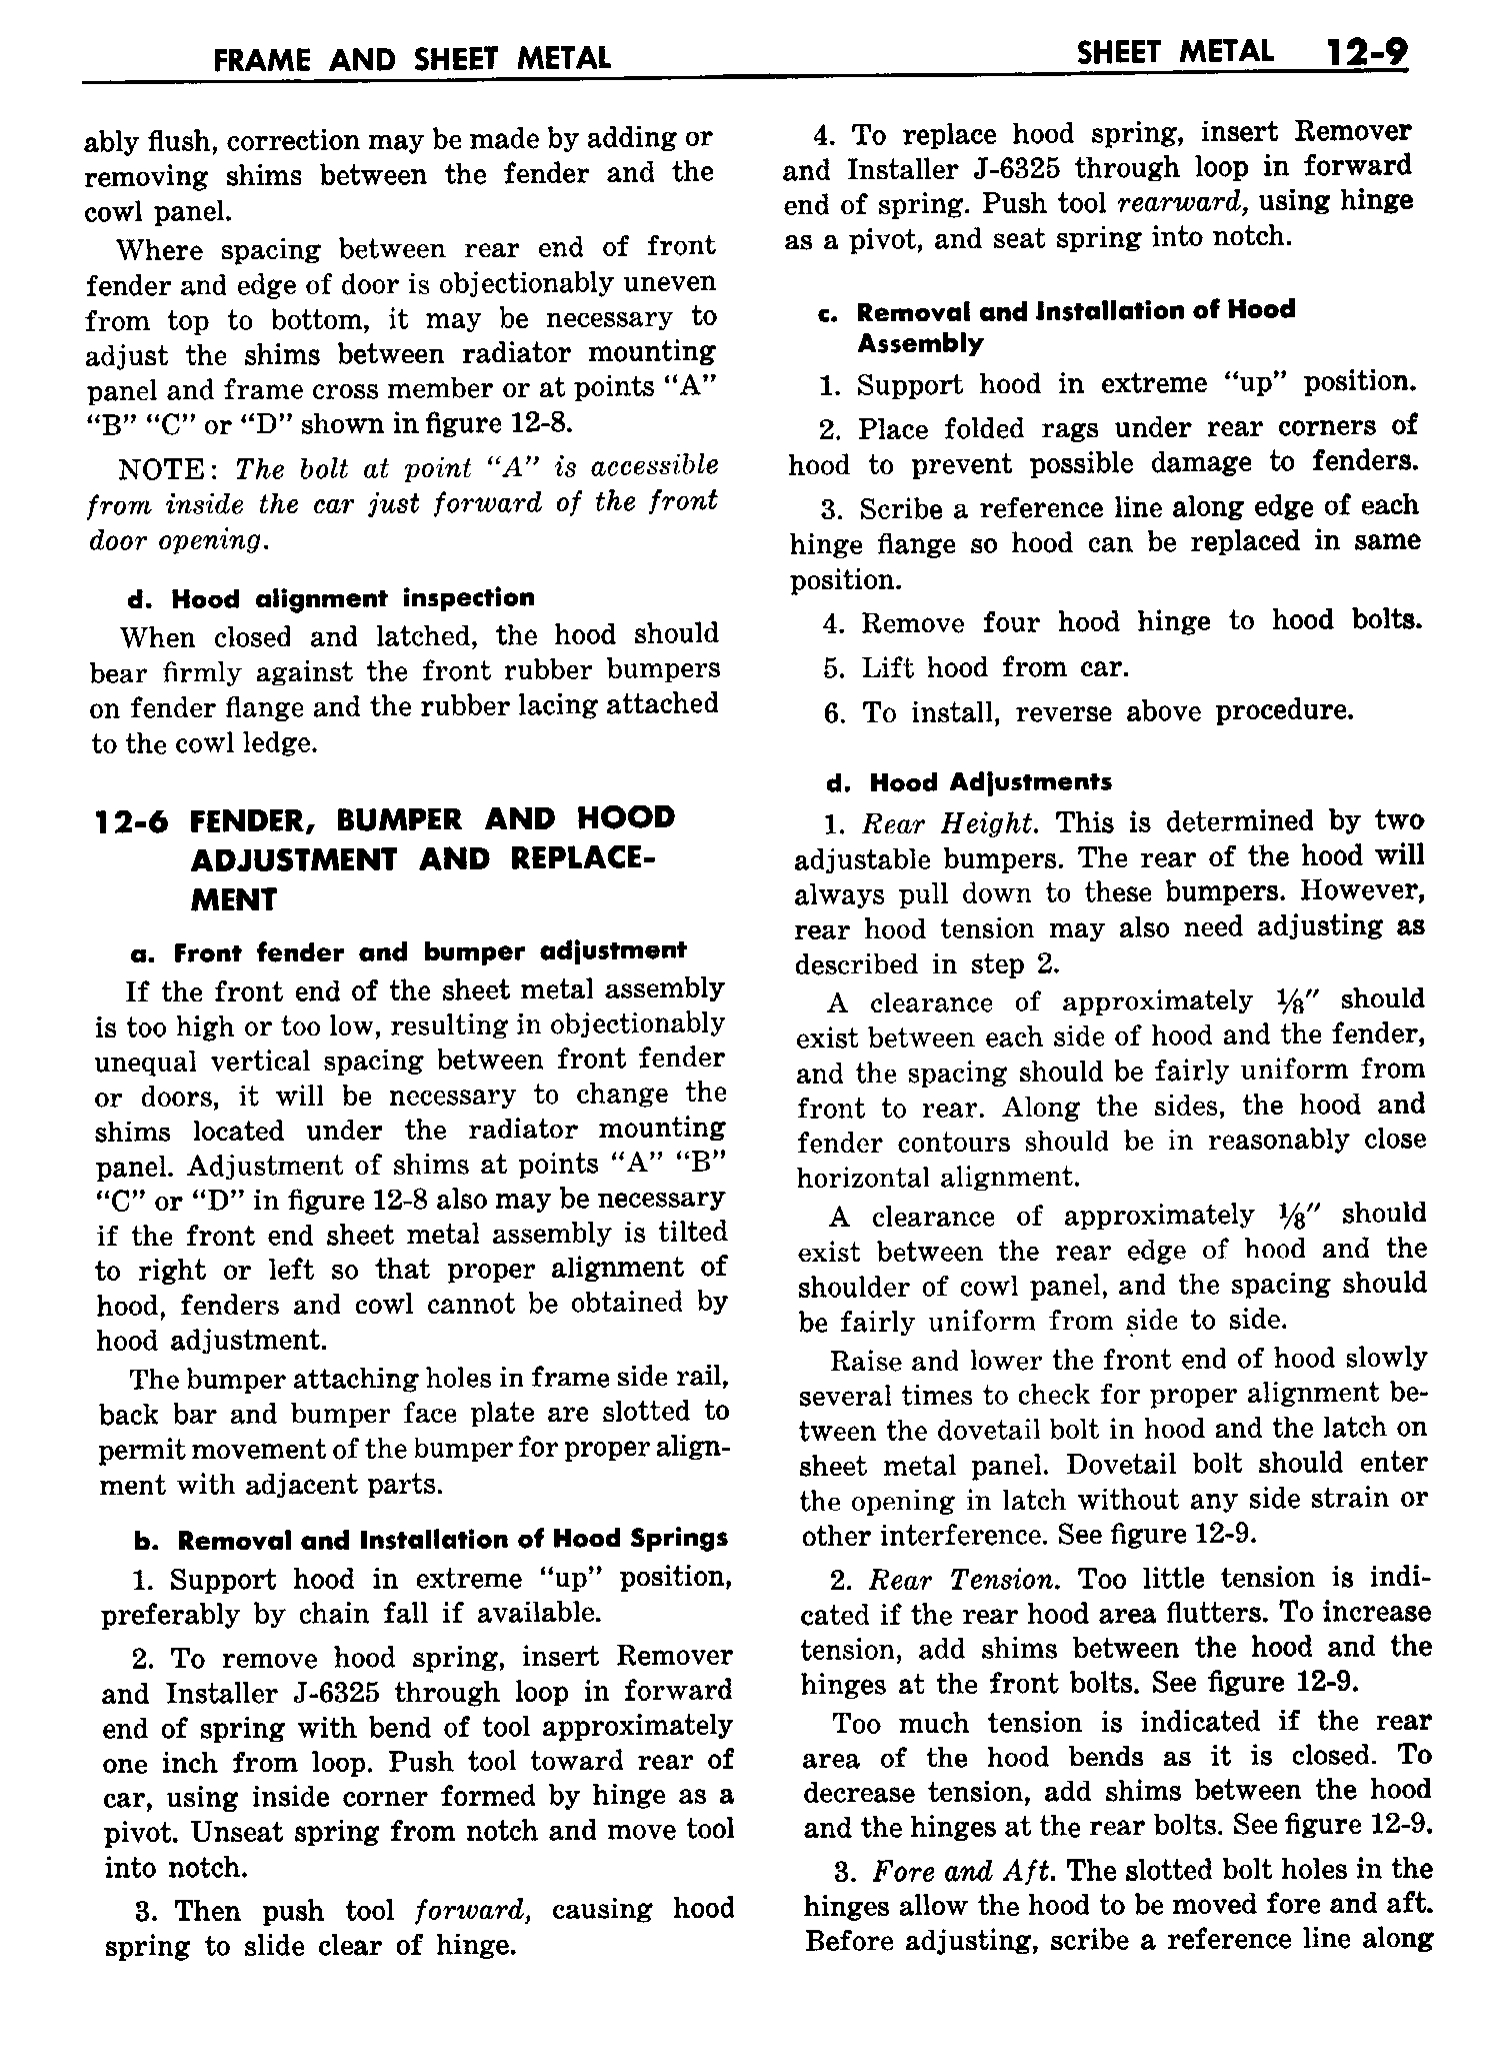 n_13 1958 Buick Shop Manual - Frame & Sheet Metal_9.jpg